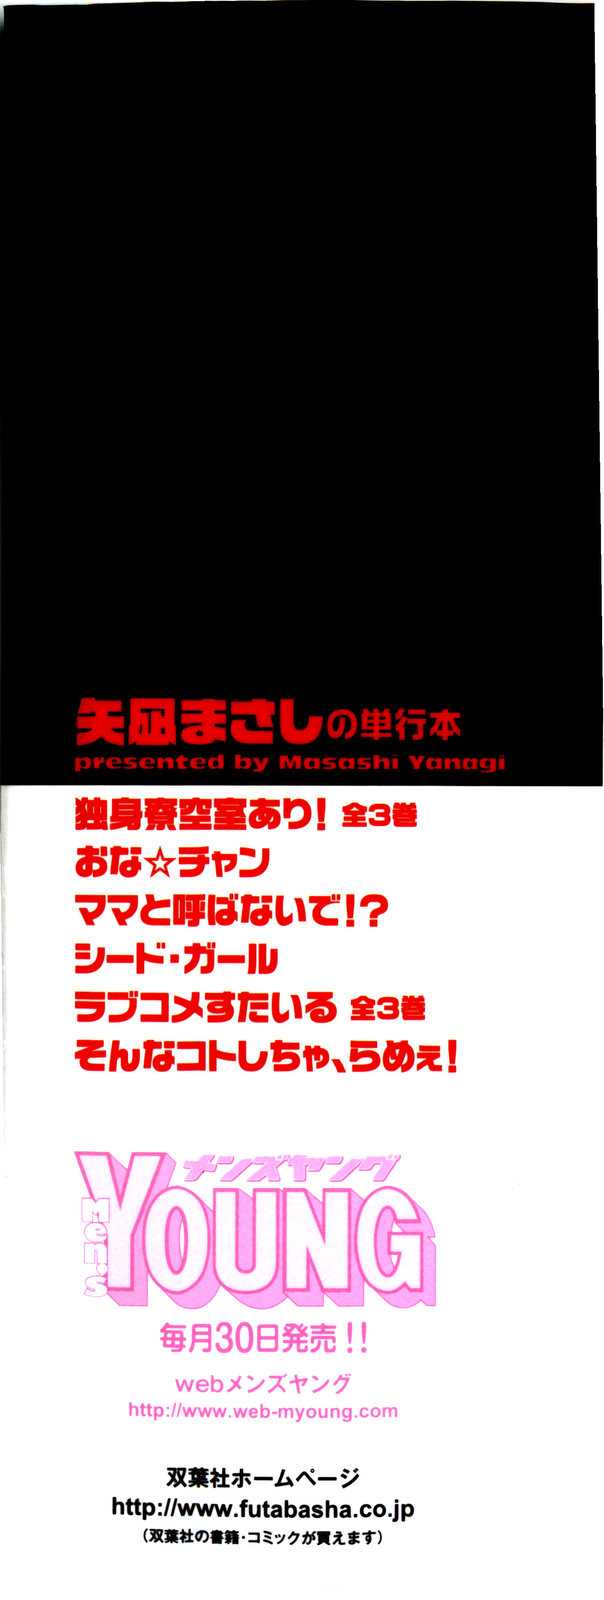 [Yanagi Masashi] Love and Devil Vol. 2 (Complete) [English] [redCoMet] 